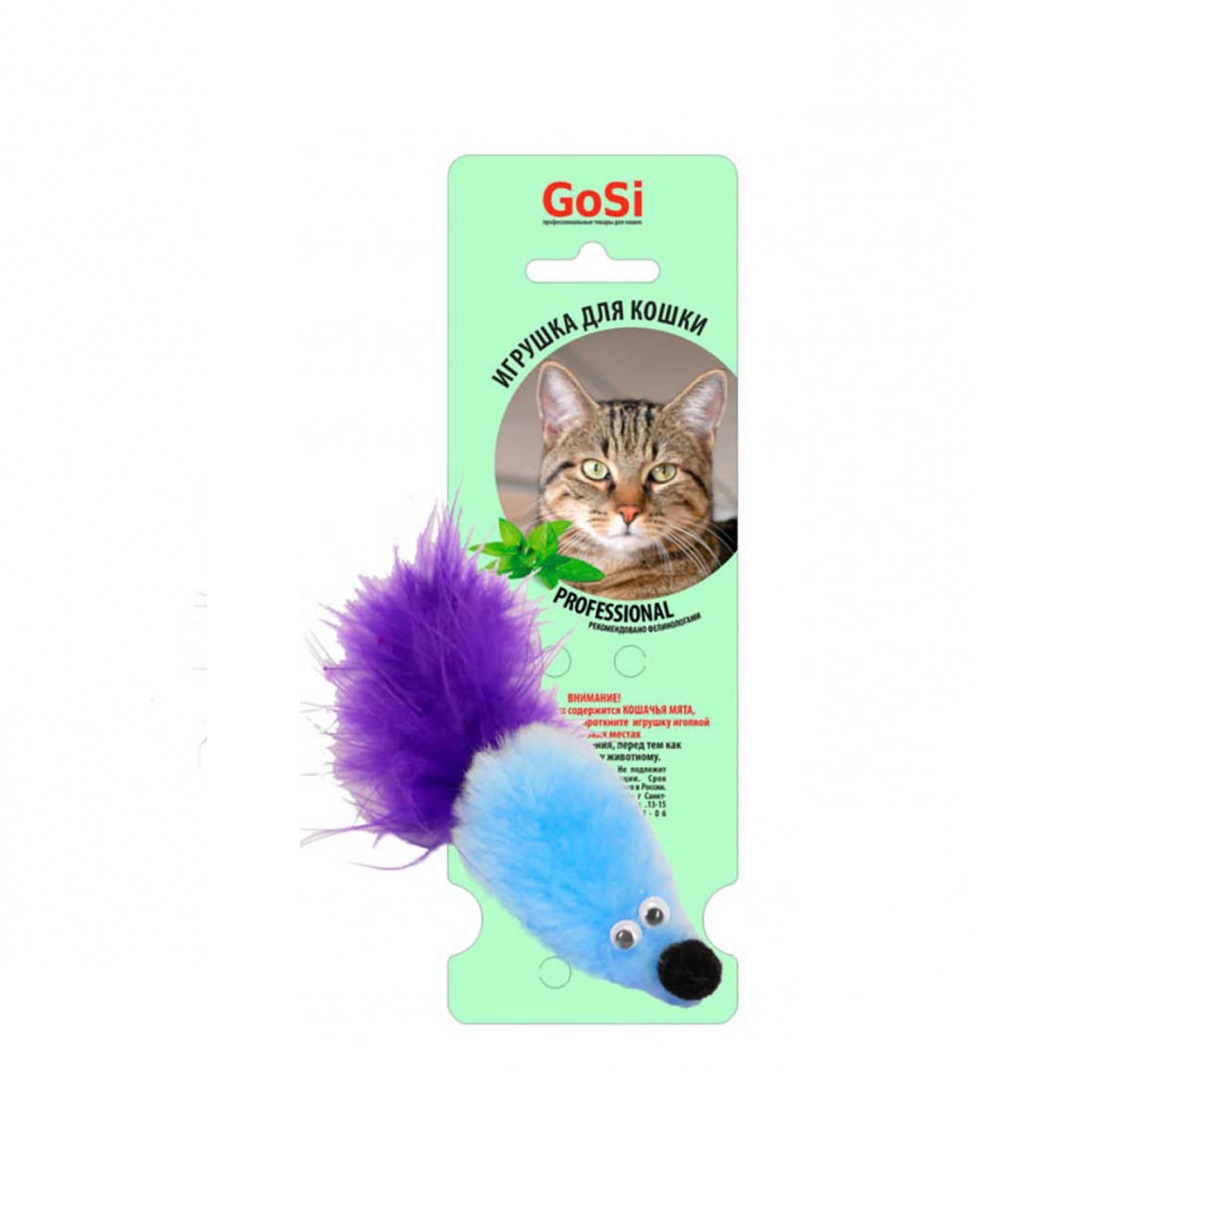 Мышь Меховая с Мятой 5см (GoSi) + Подарок